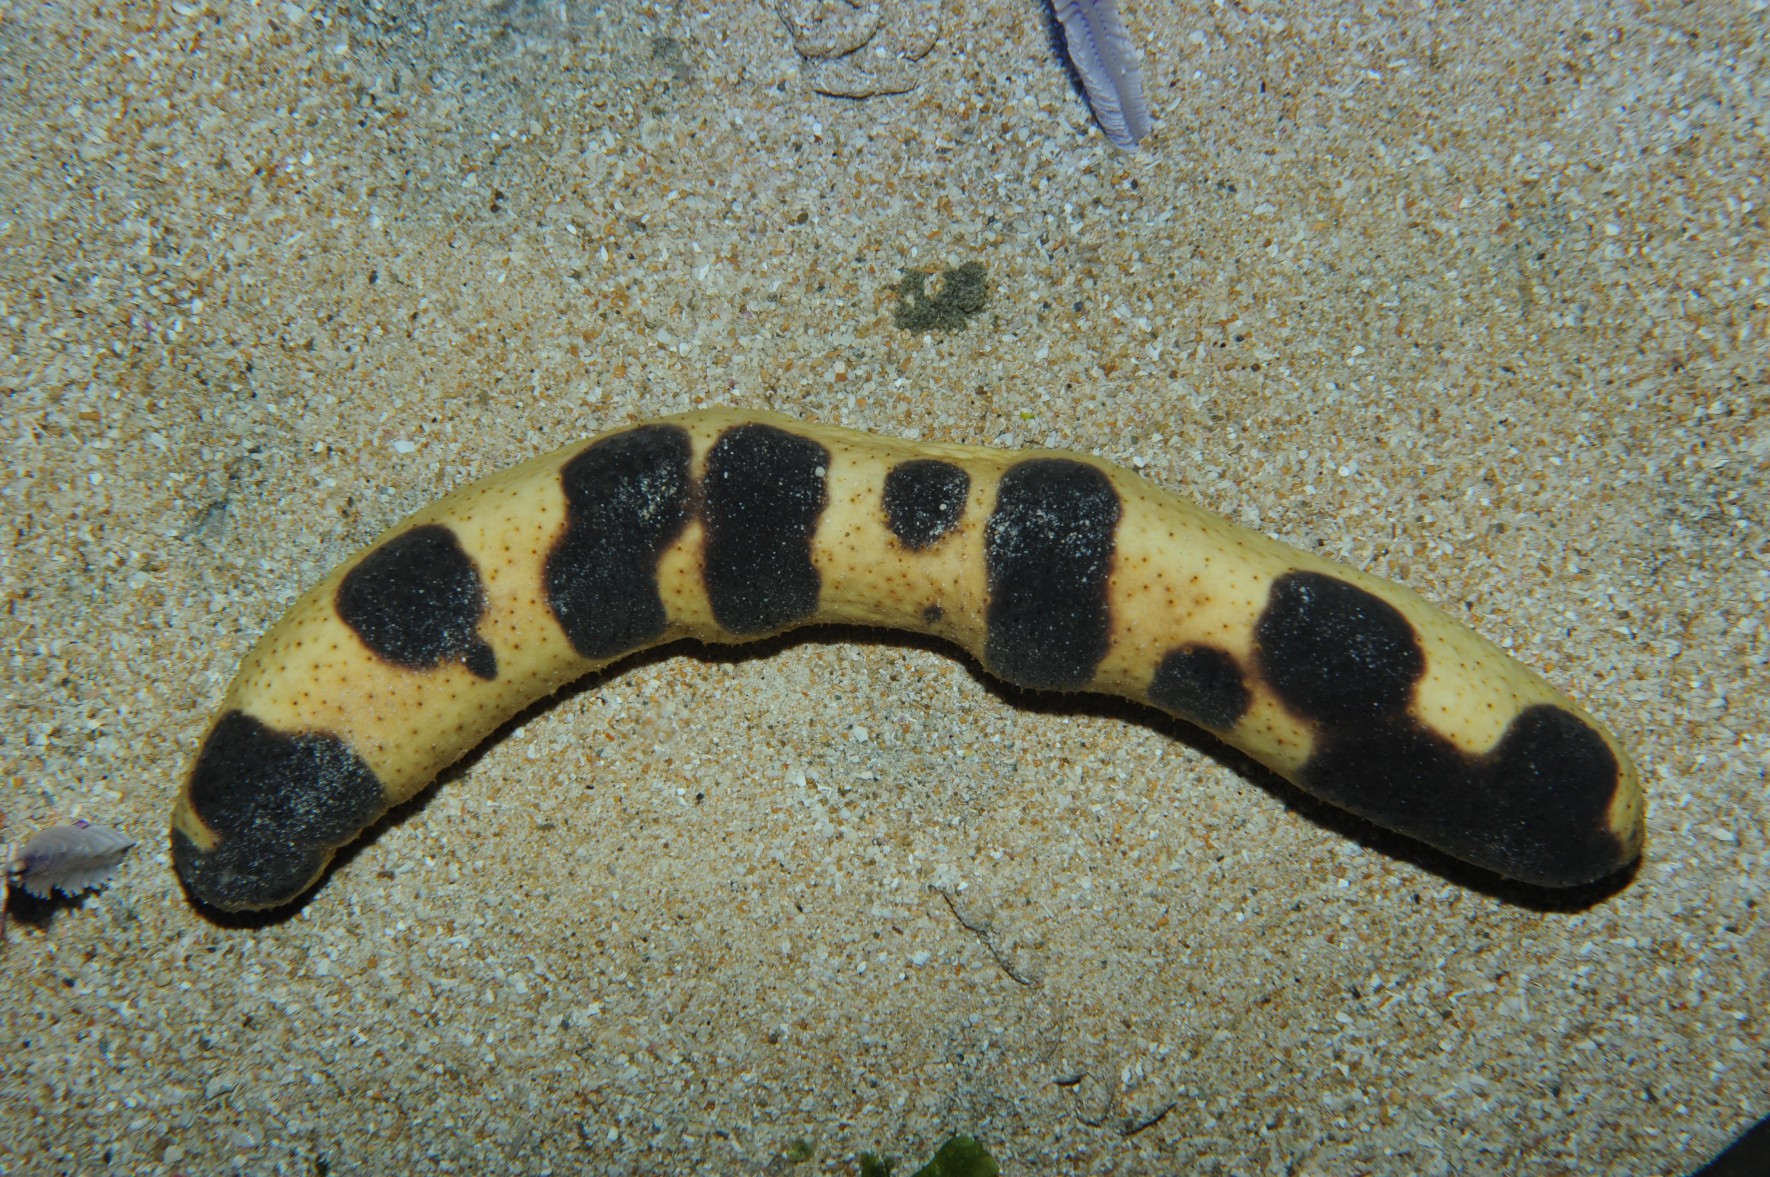 Sea cucumber species